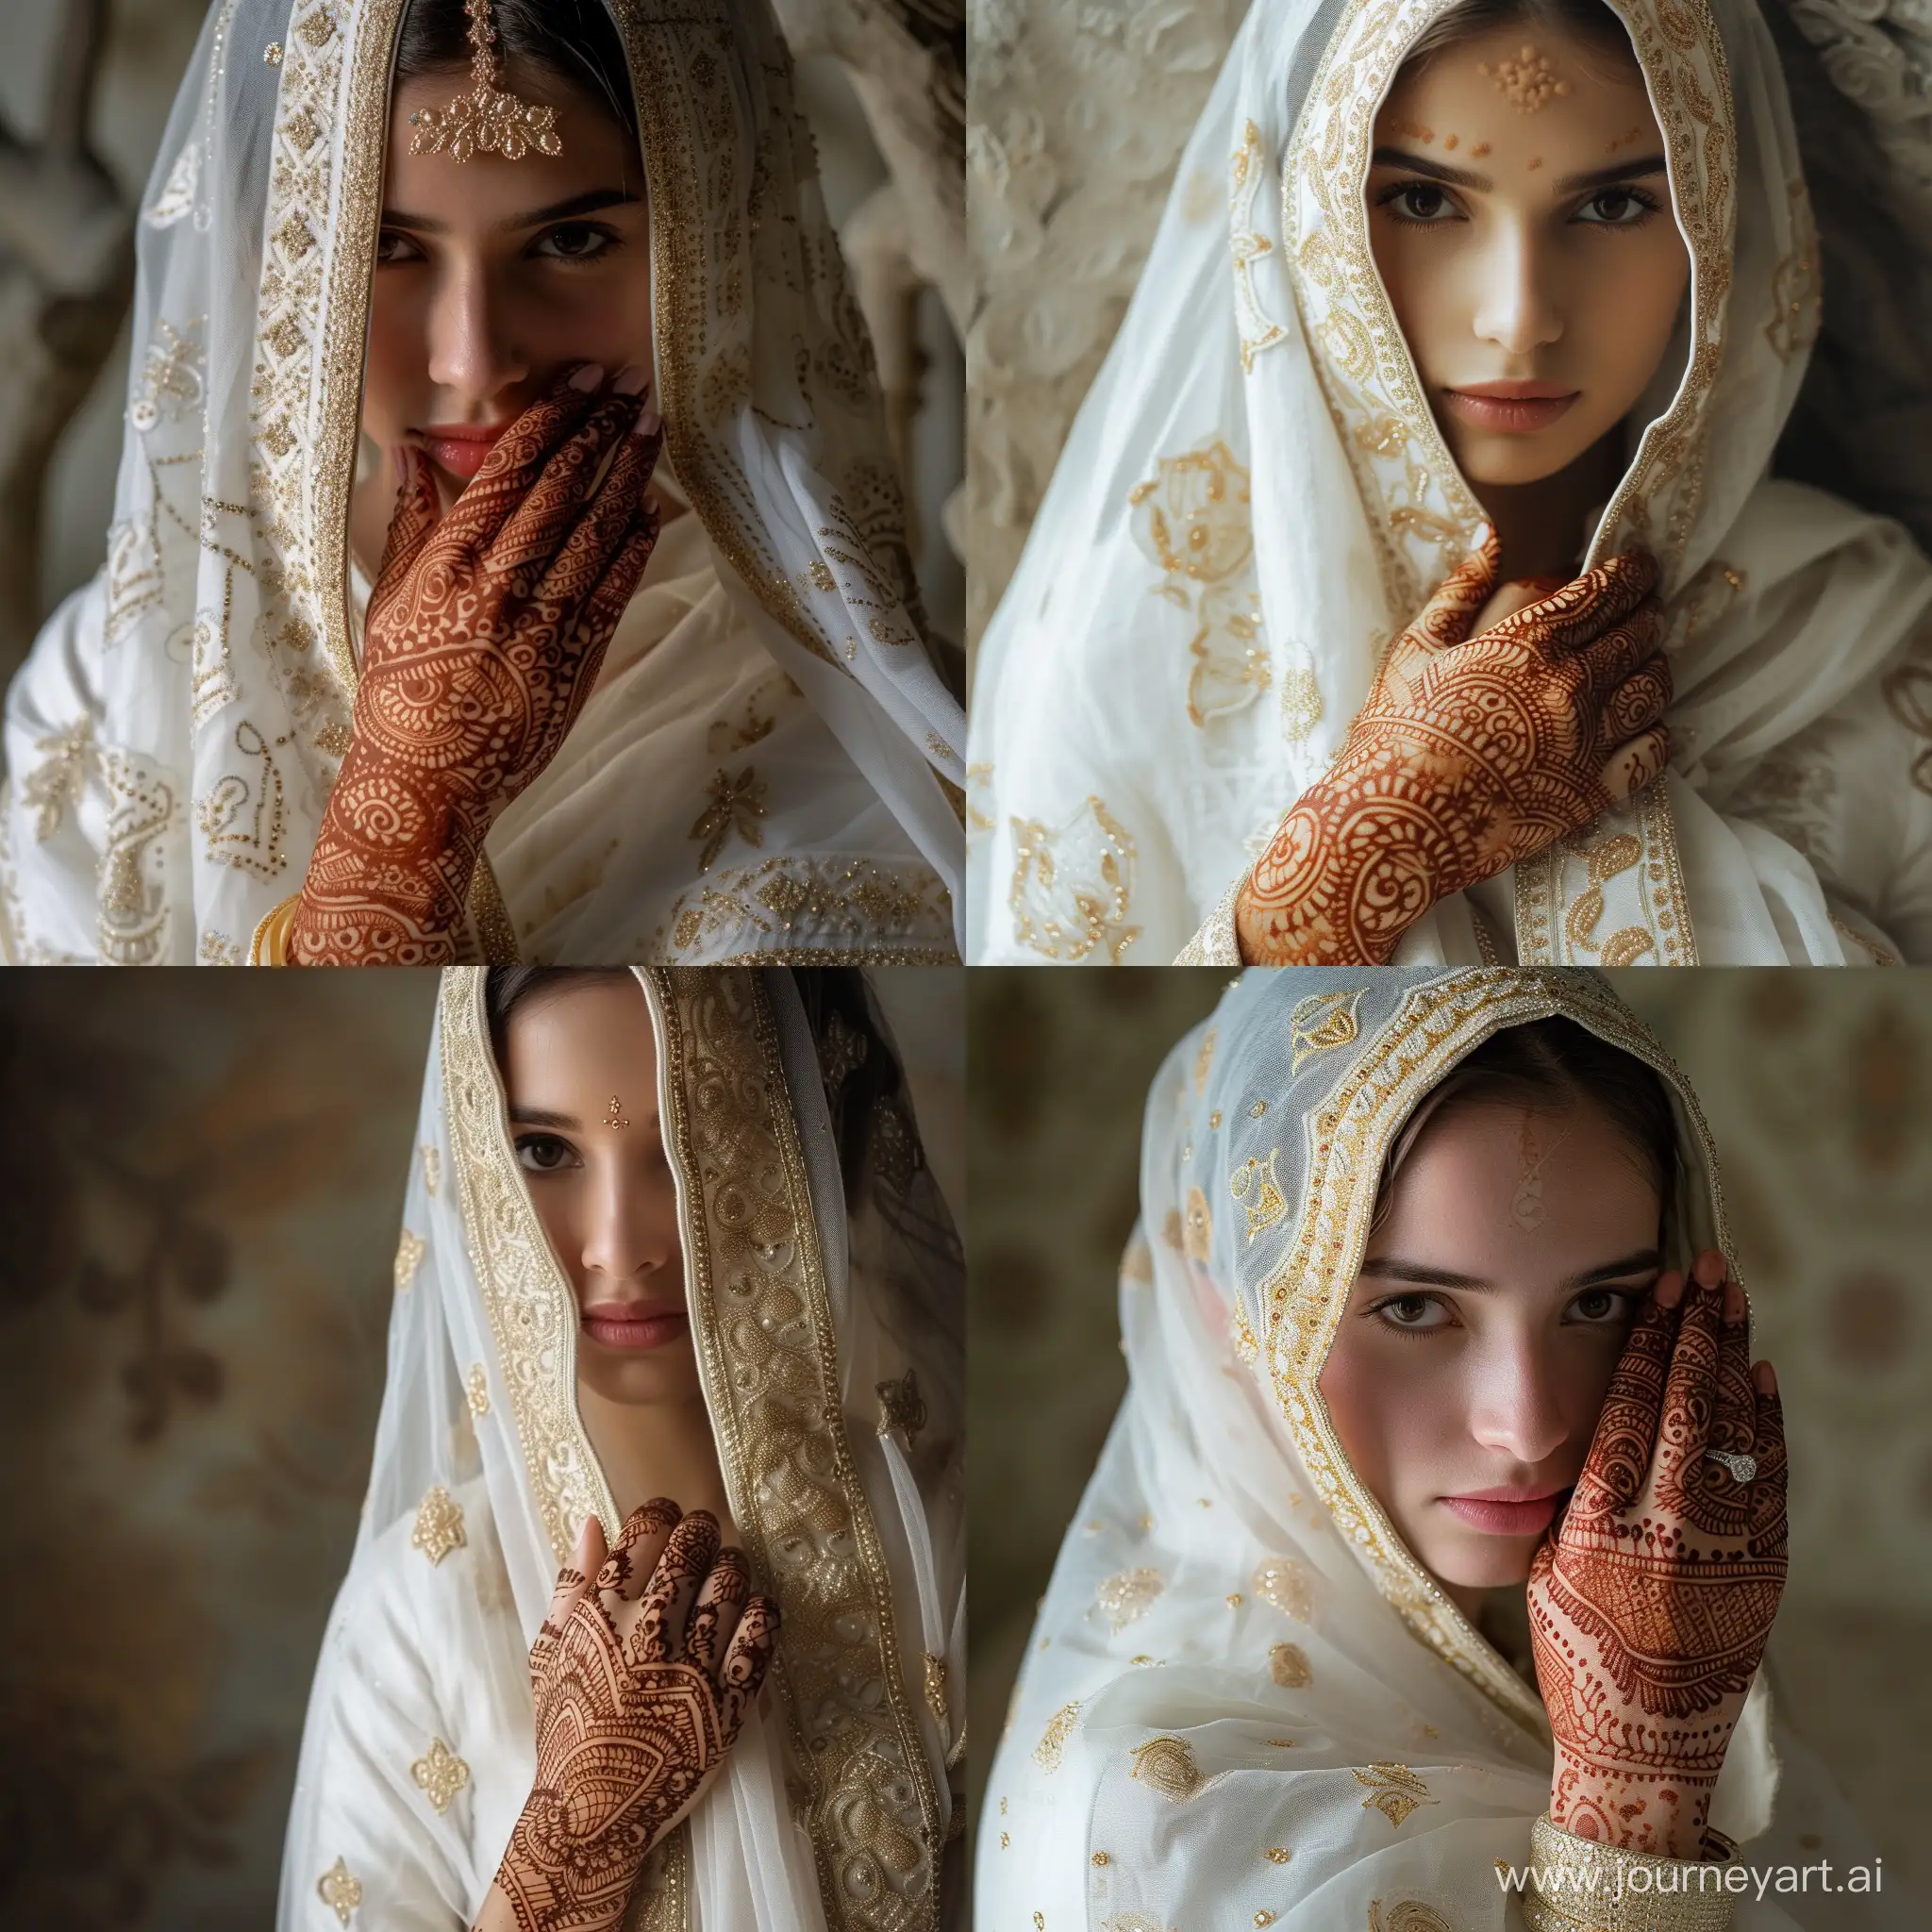  لقطة فتاة عروس بالباس الساري الهندي الابيض المزخرف بالذهبي بغطار رأس يظهر نصف الوجه و نقش حناء على يدها 